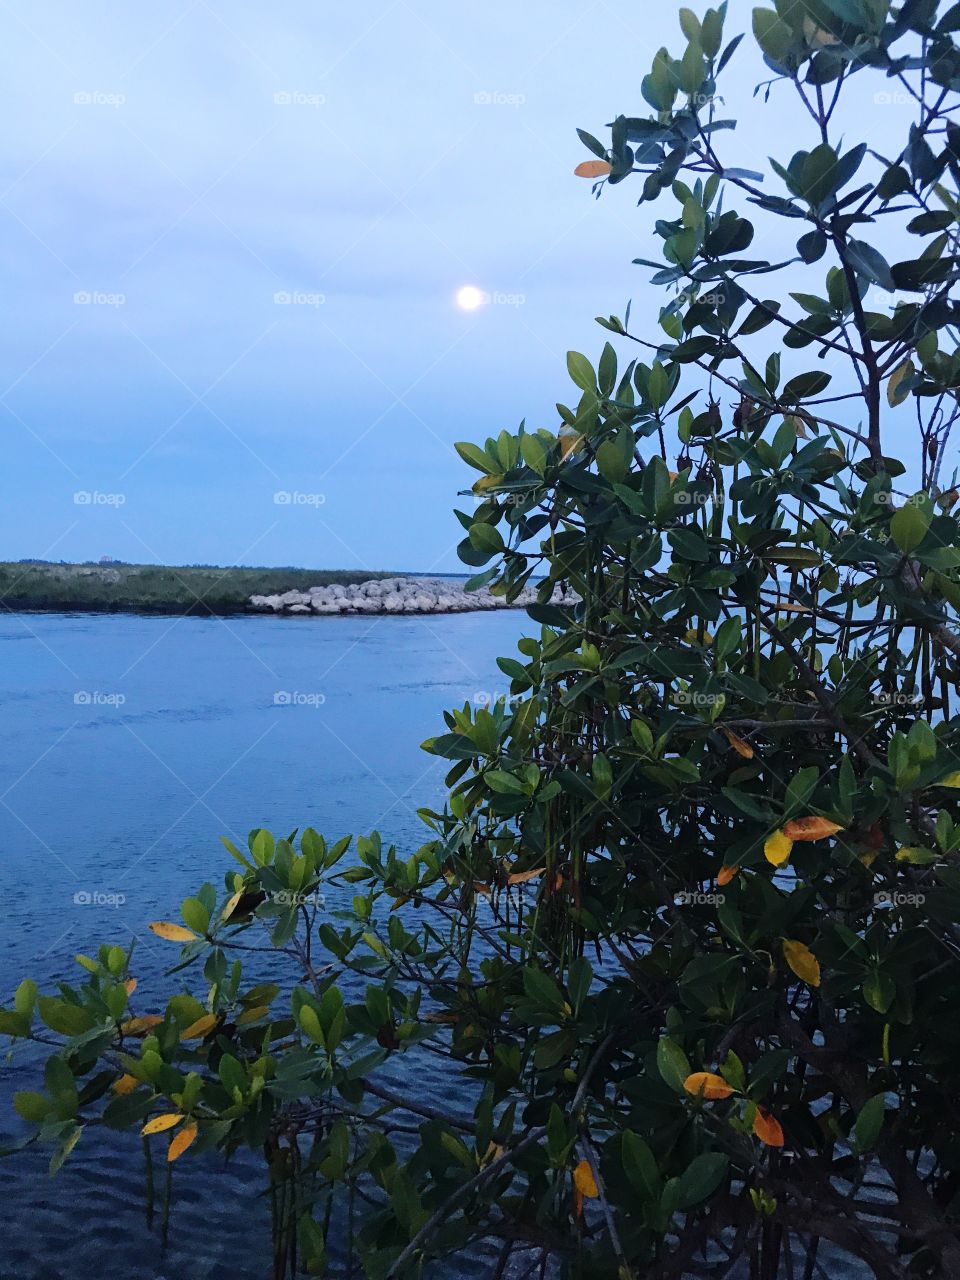 The Mangroves at night